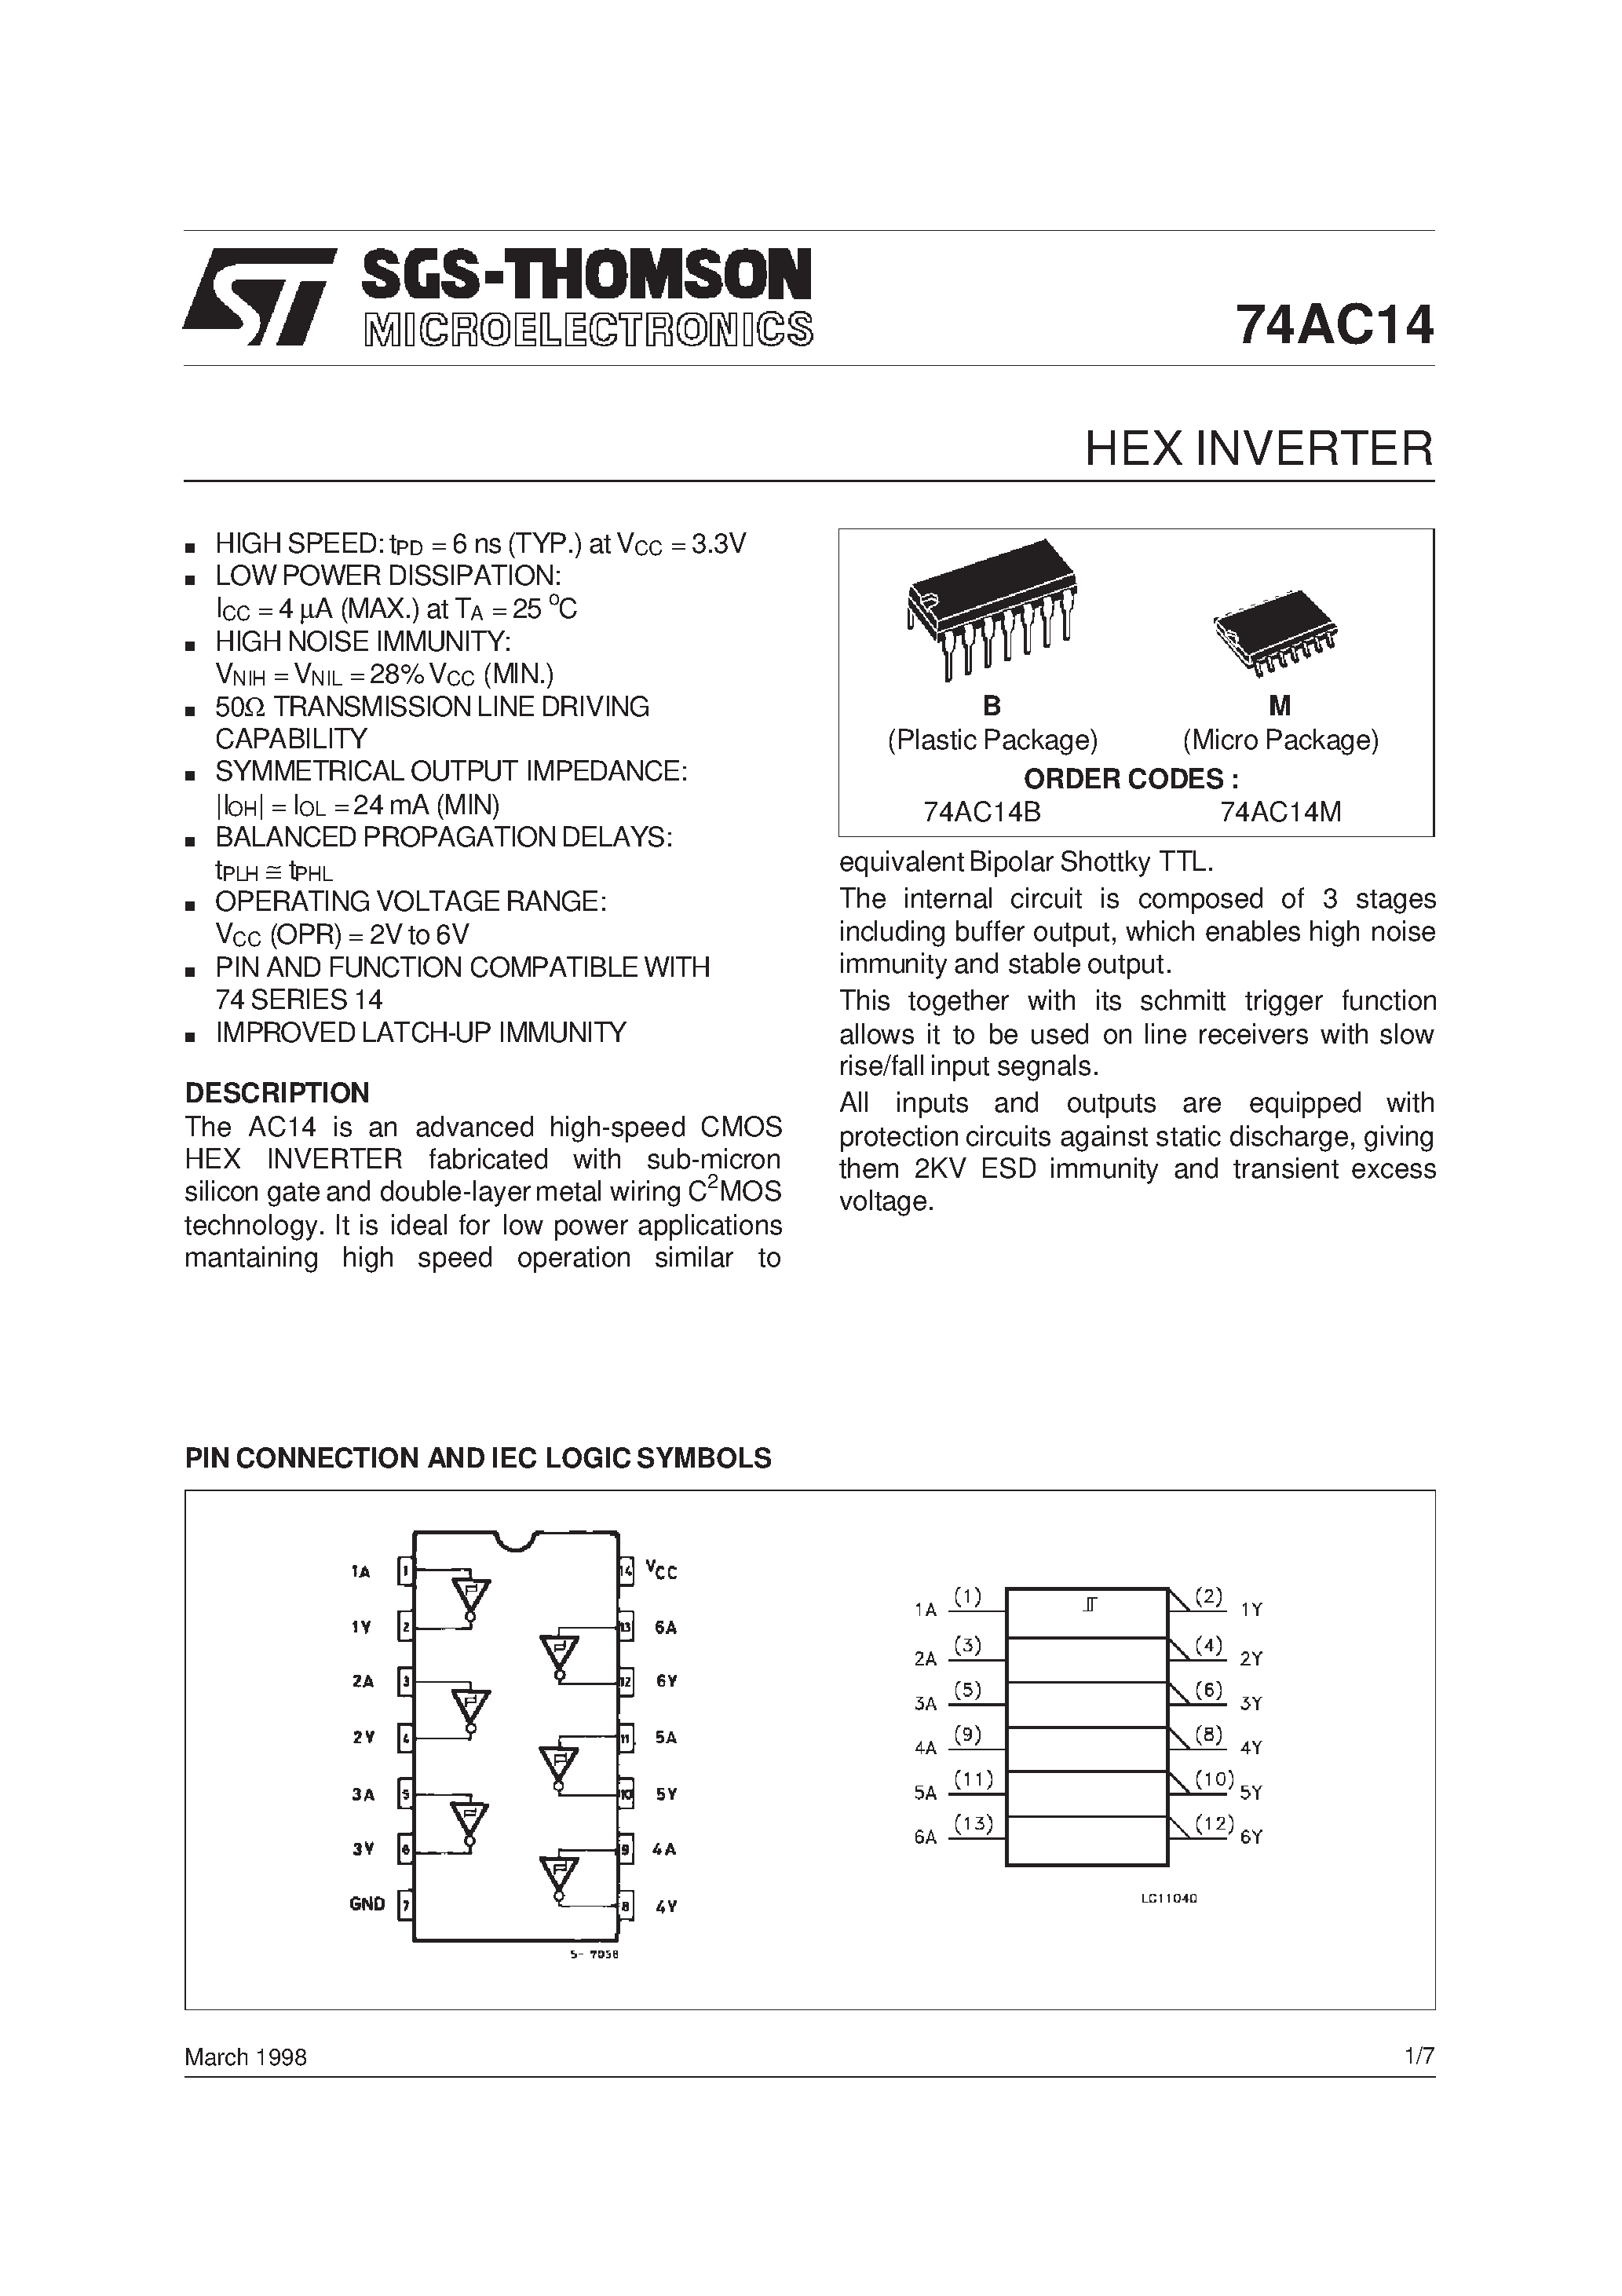 Datasheet 74AC14MTC - Hex Inverter with Schmitt Trigger Input page 1